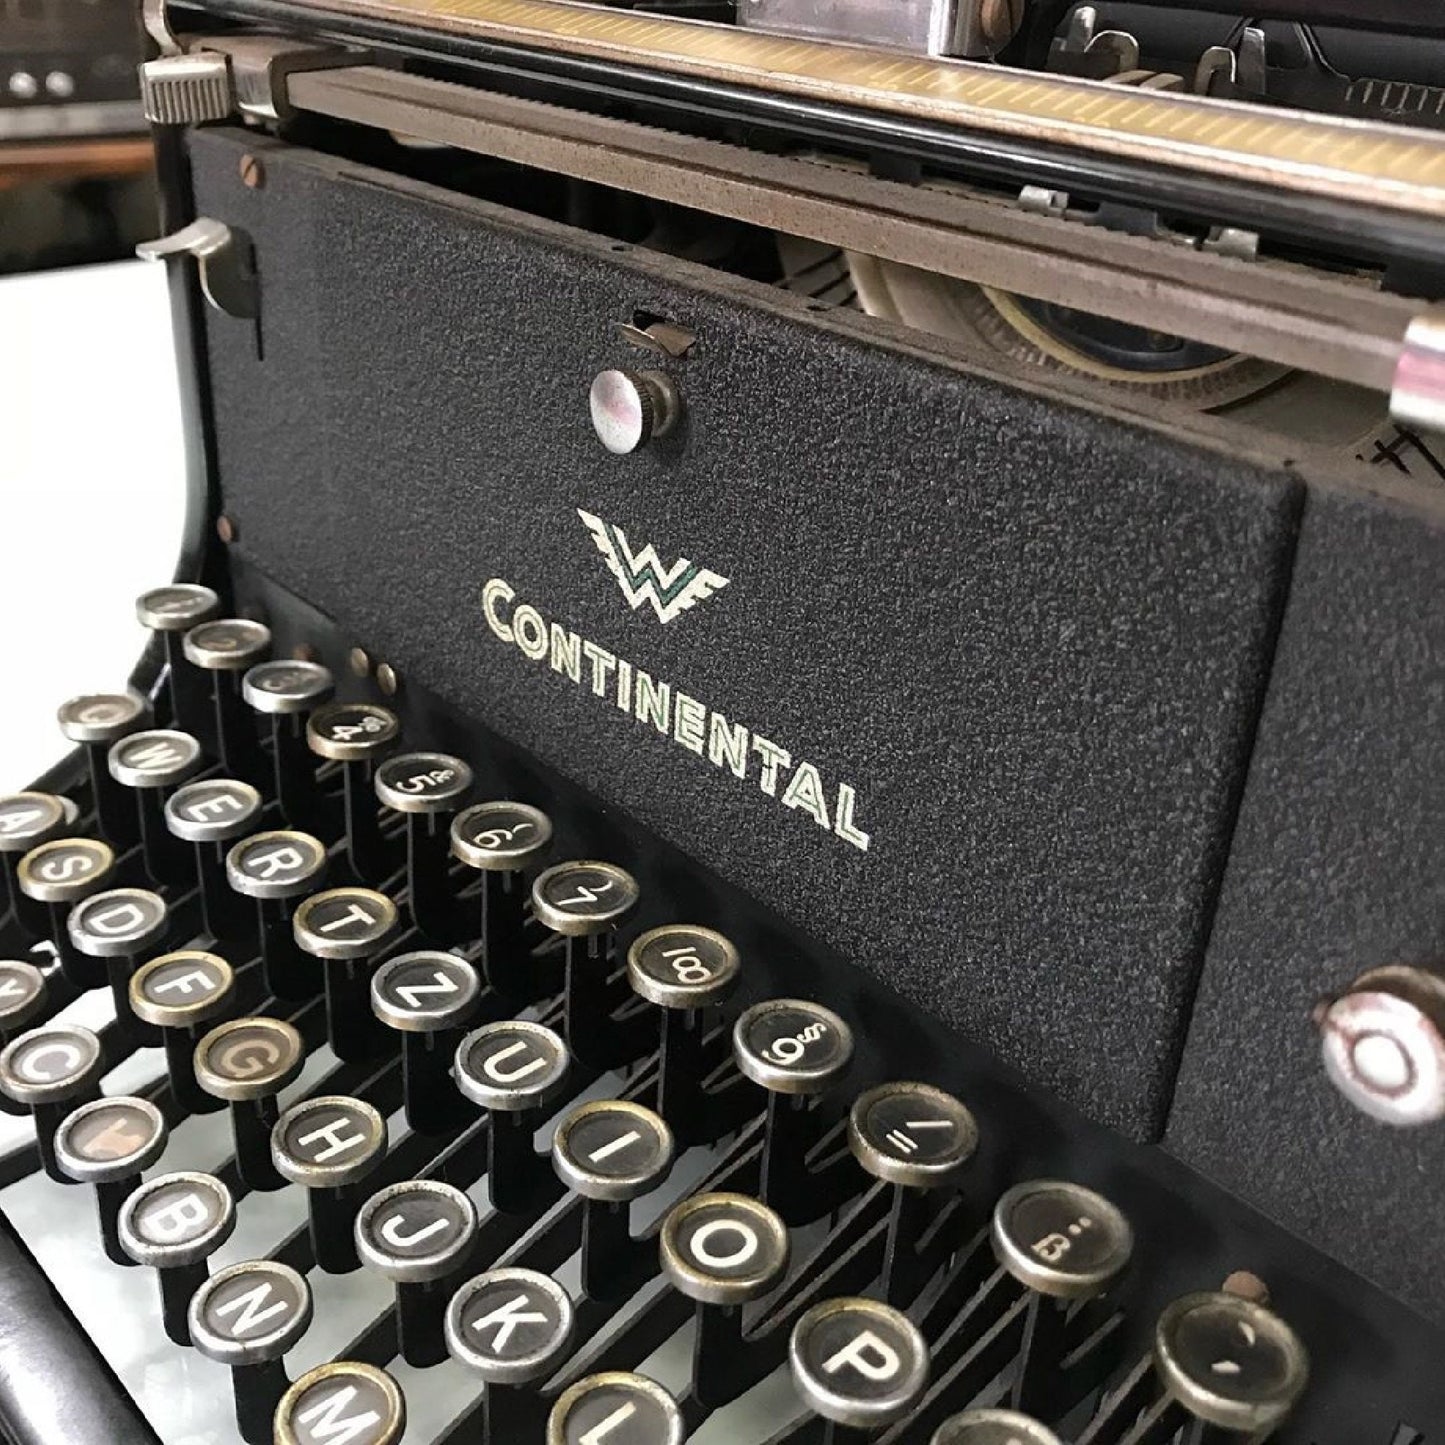 Continental Office Typewriter | Typewriter like new,typewriter working